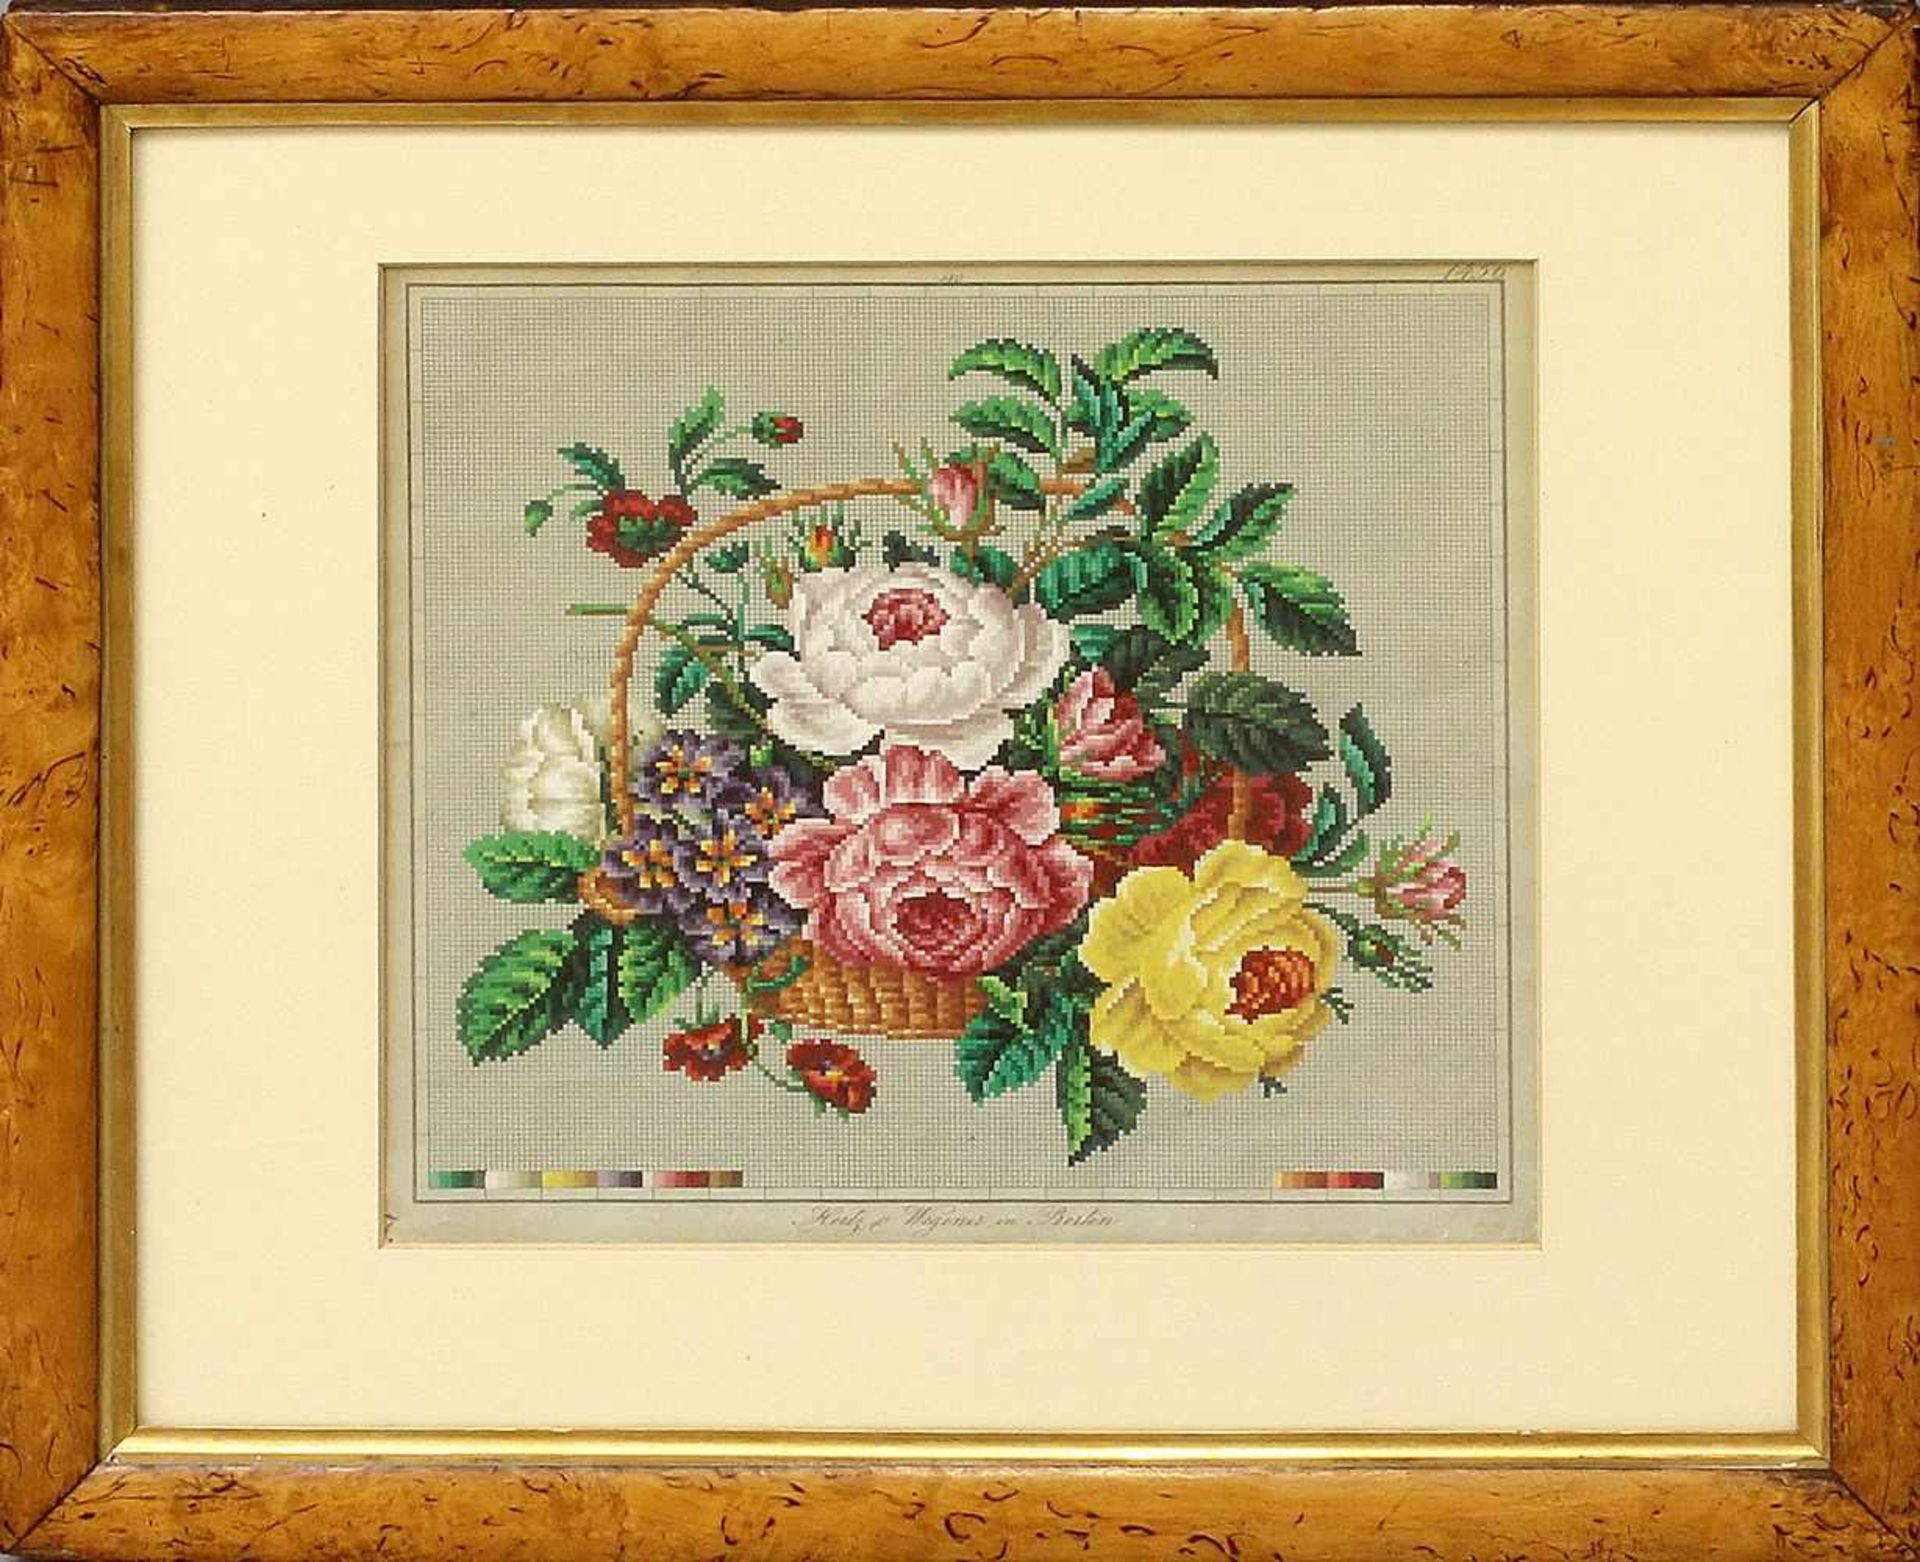 Biedermeier-Stickmustervorlage (Berlin, um 1830)Blumenkorb. Handkolorierte Stickmustervorlage auf